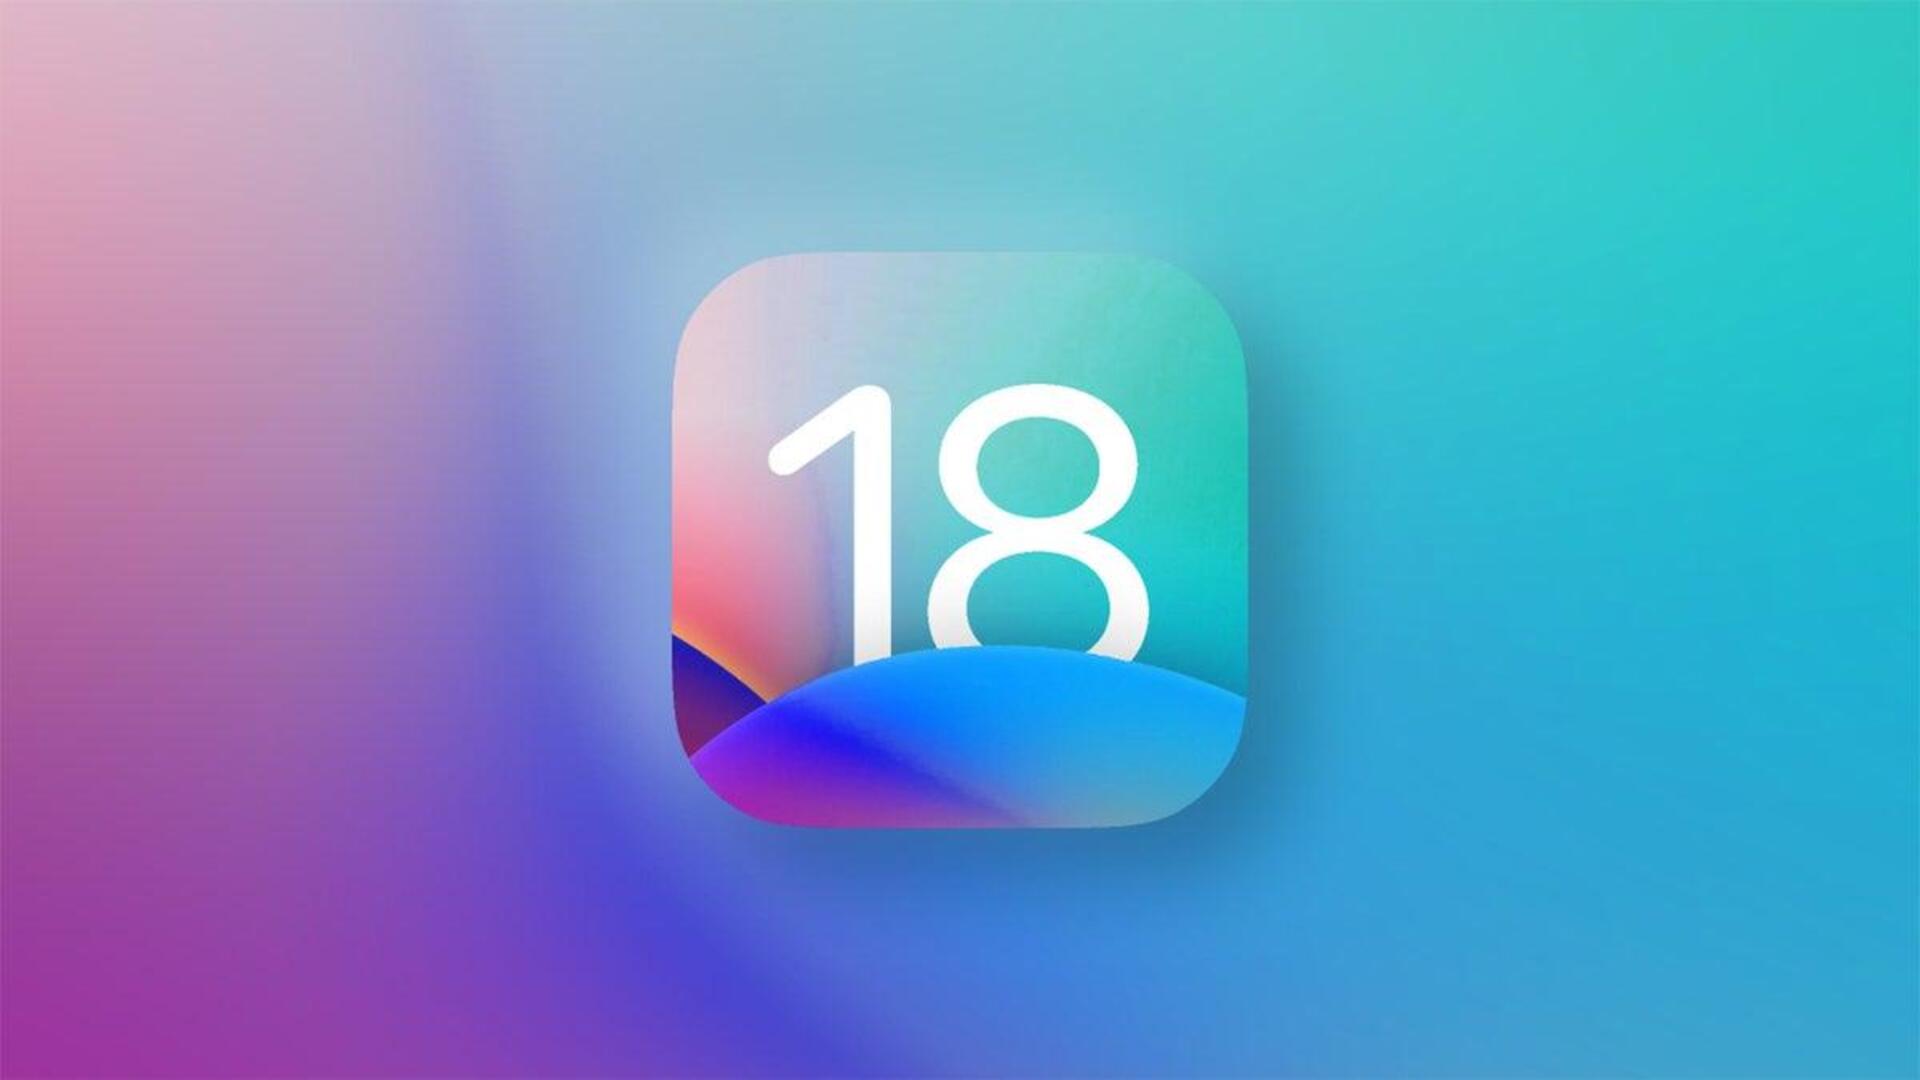 Apple's iOS 18 rumored to focus on generative AI capabilities